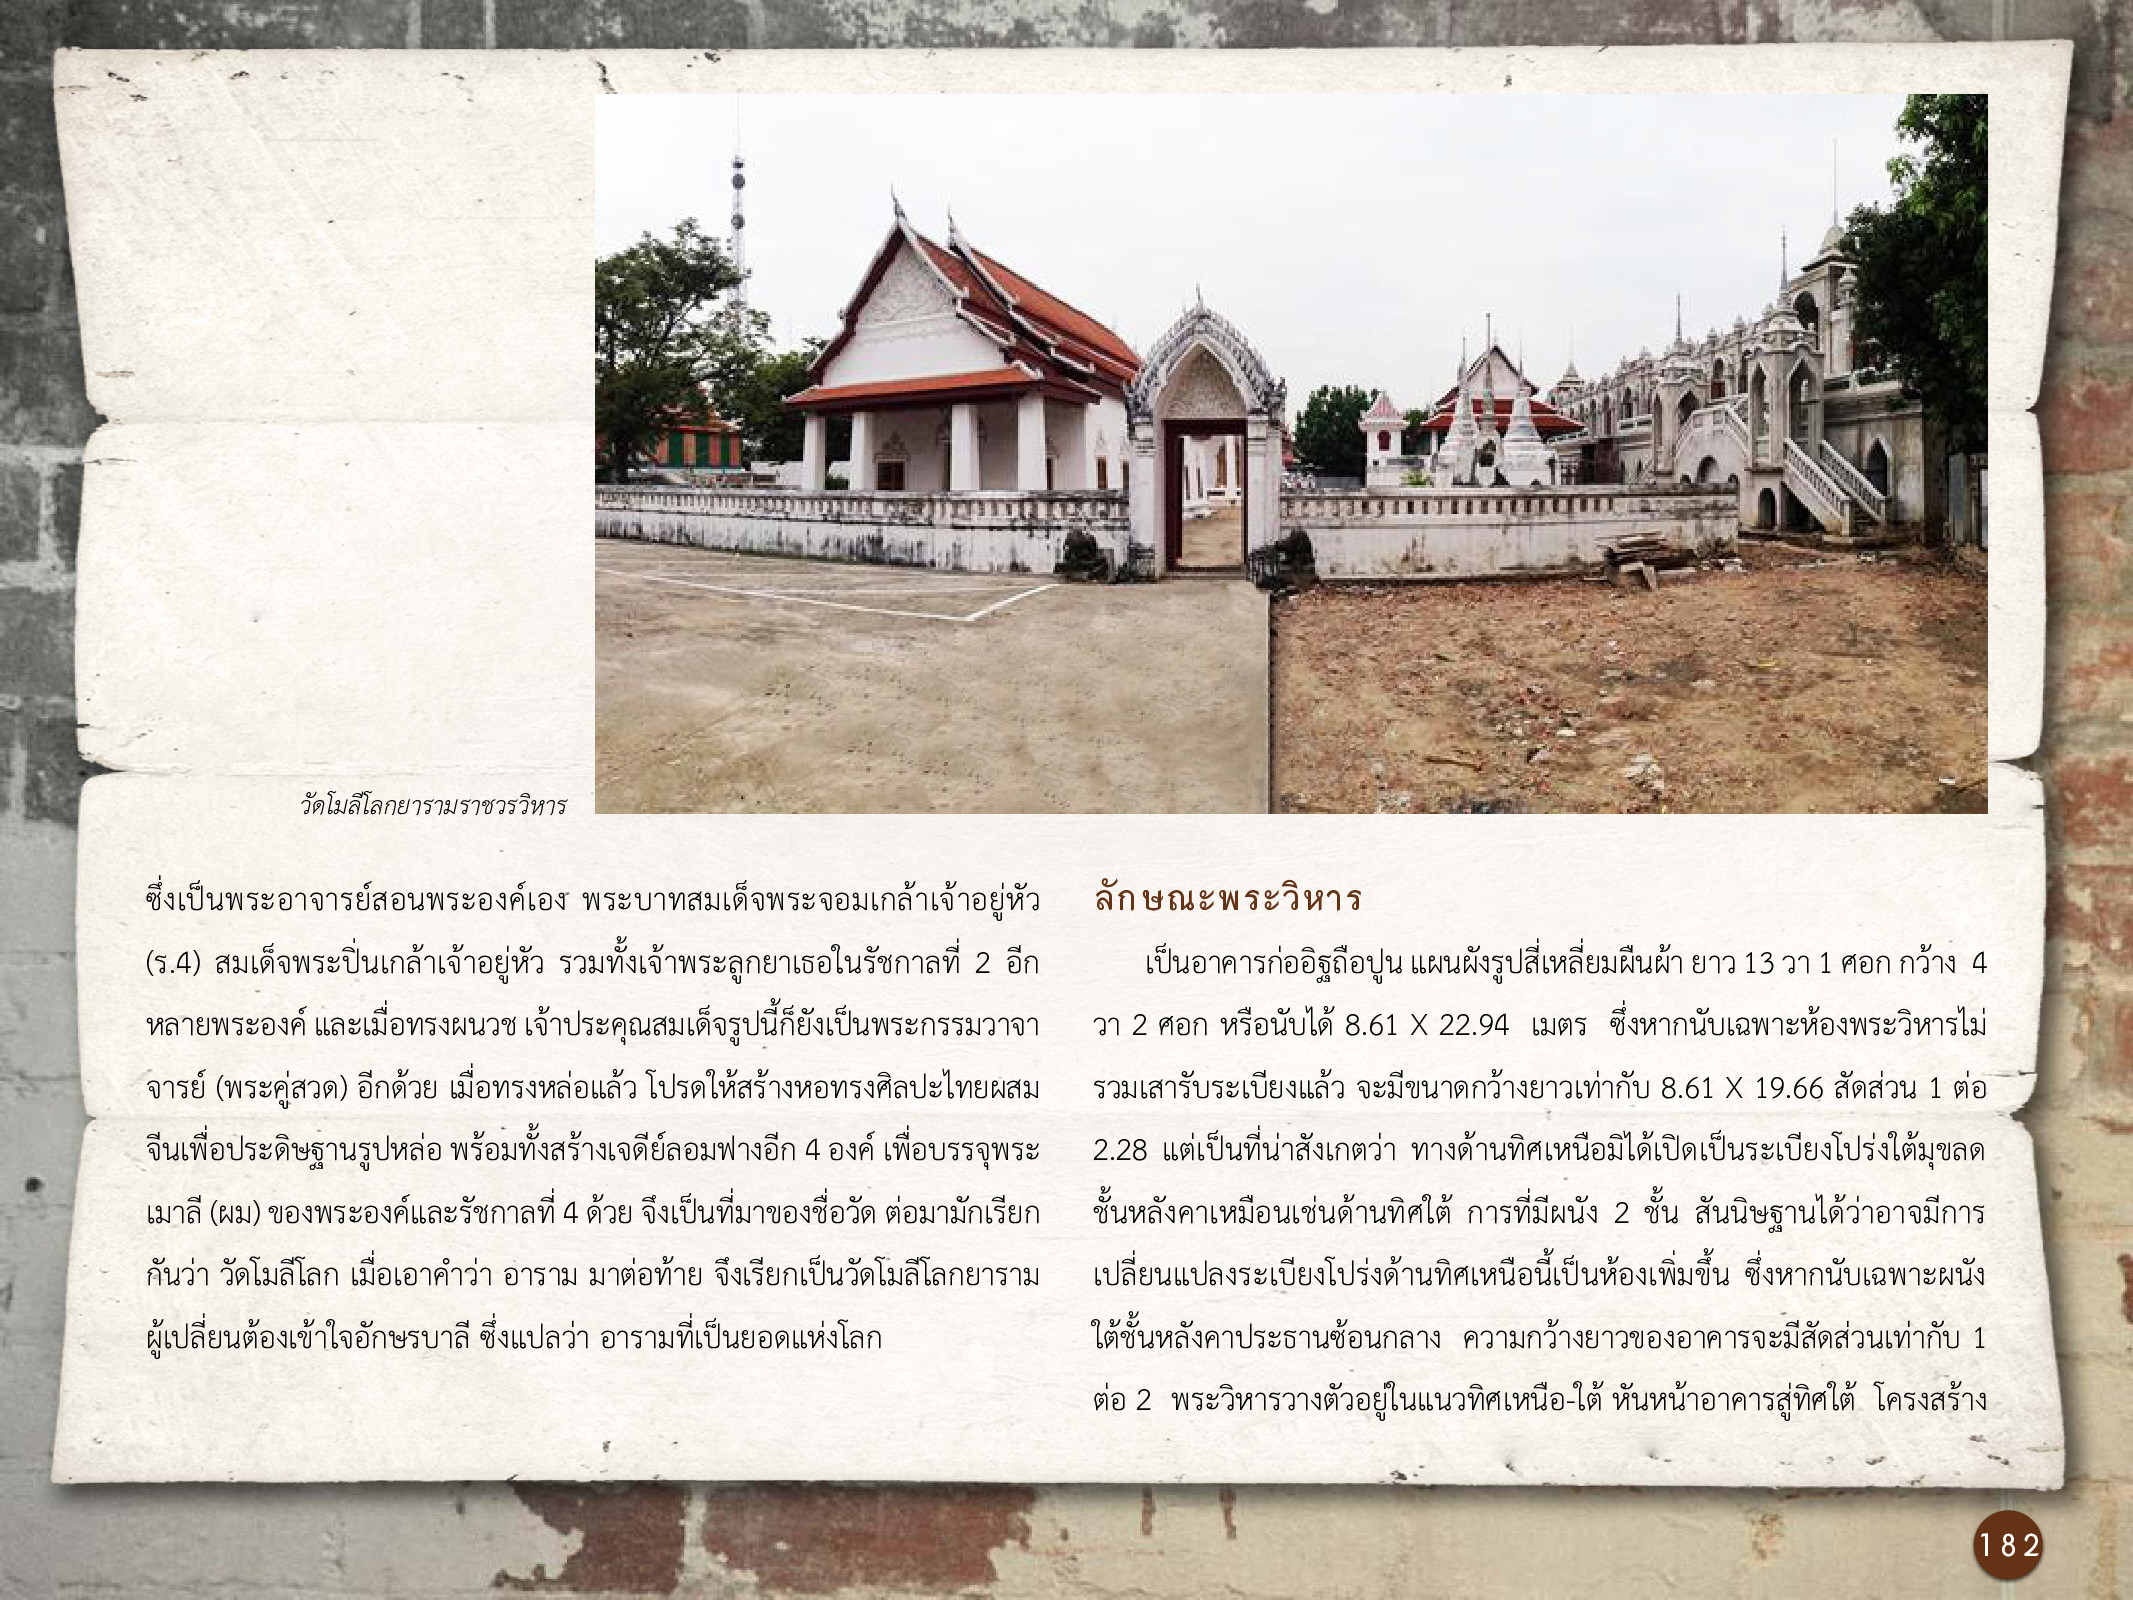 ศิลปกรรมกรุงธนบุรี ./images/encyclopedia/182.jpg